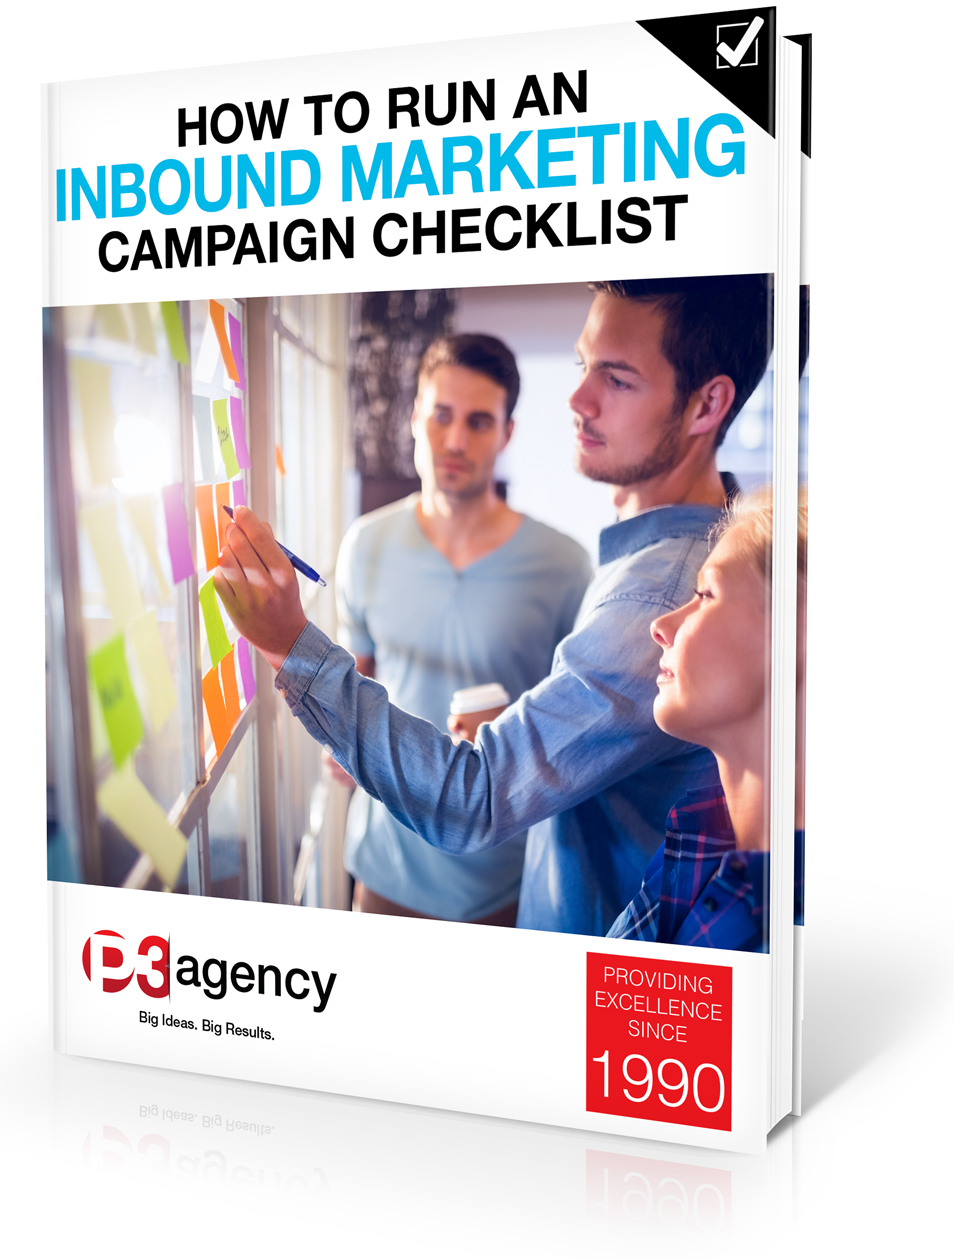 How to Run an Inbound Marketing Campaign Checklist